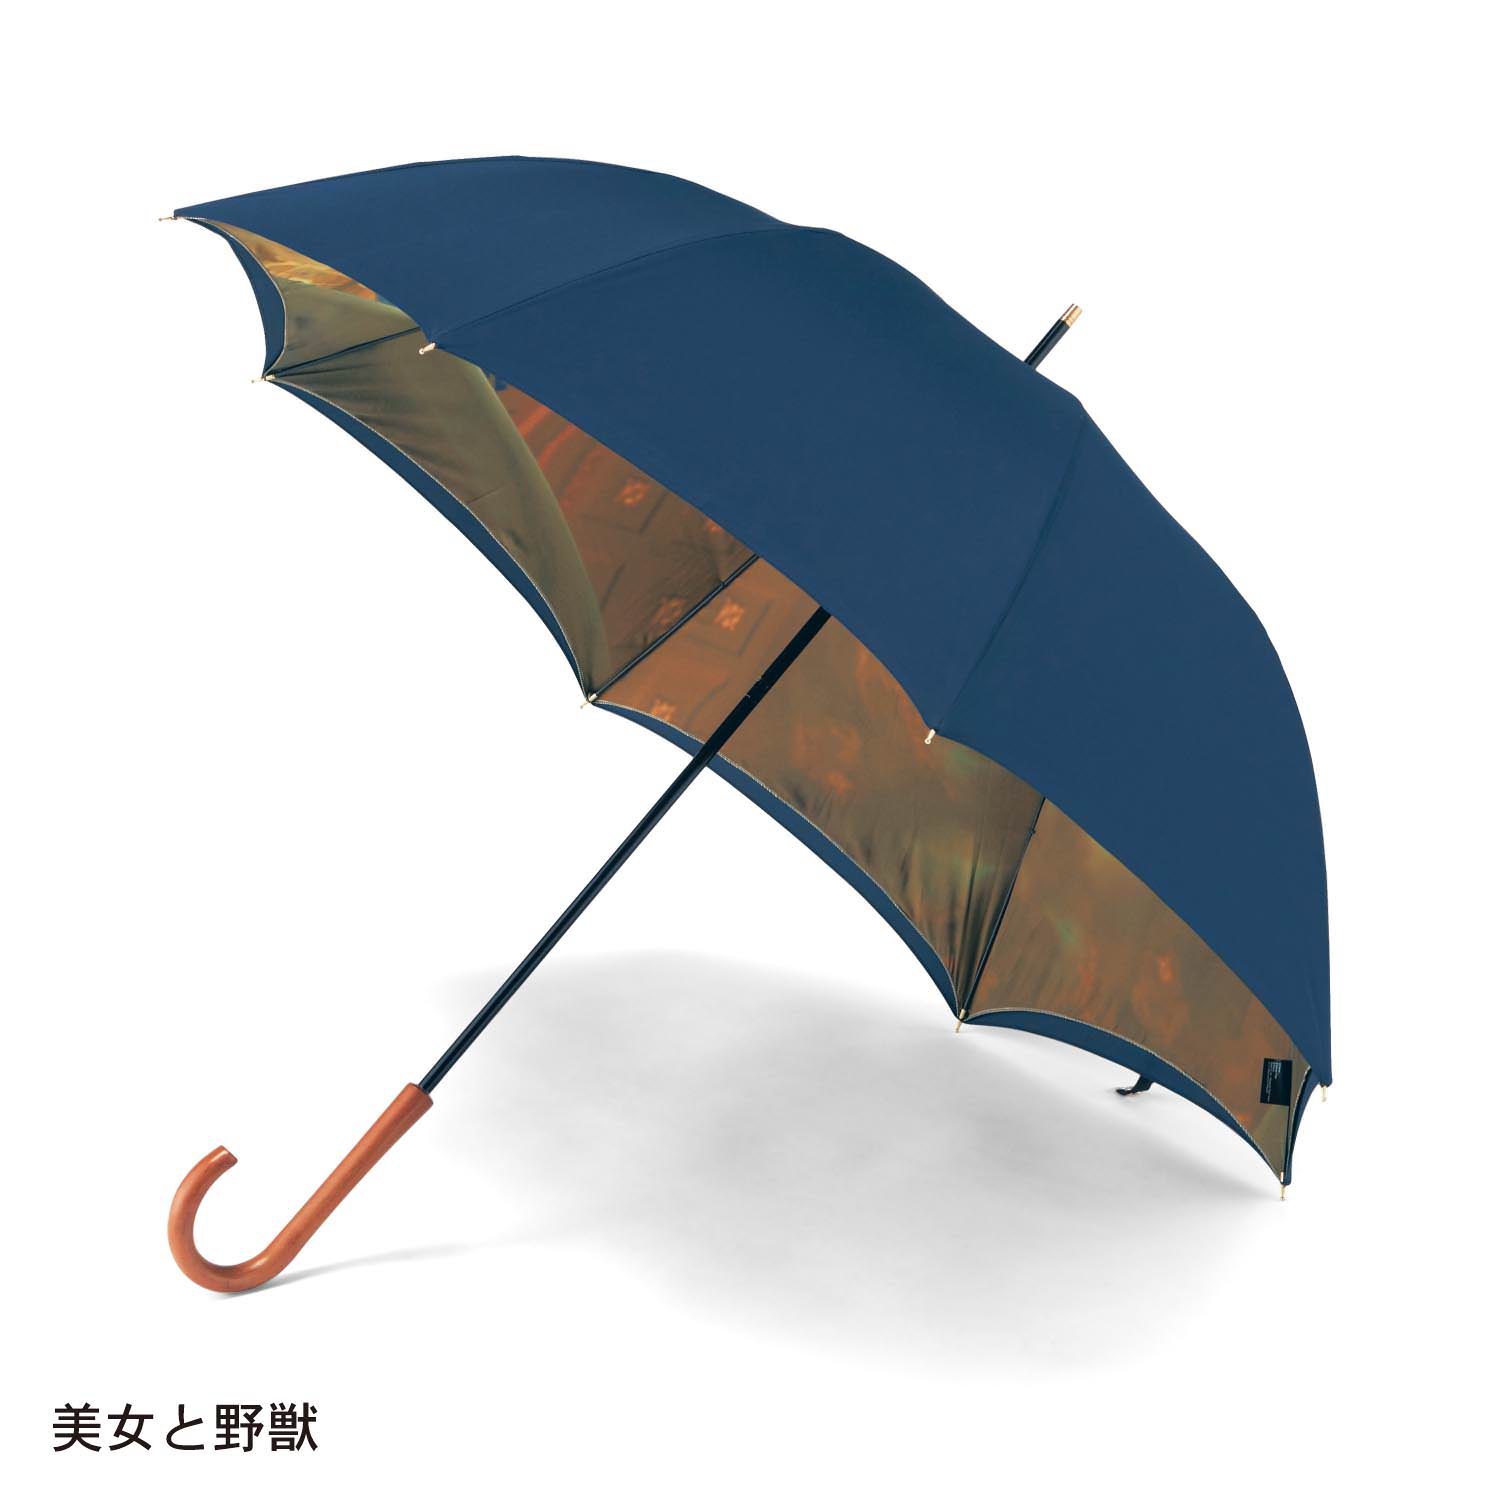 内側にロマンティックなストーリーが広がる ベルメゾン ディズニーデザイン 日本製二重張り雨傘 Dtimes